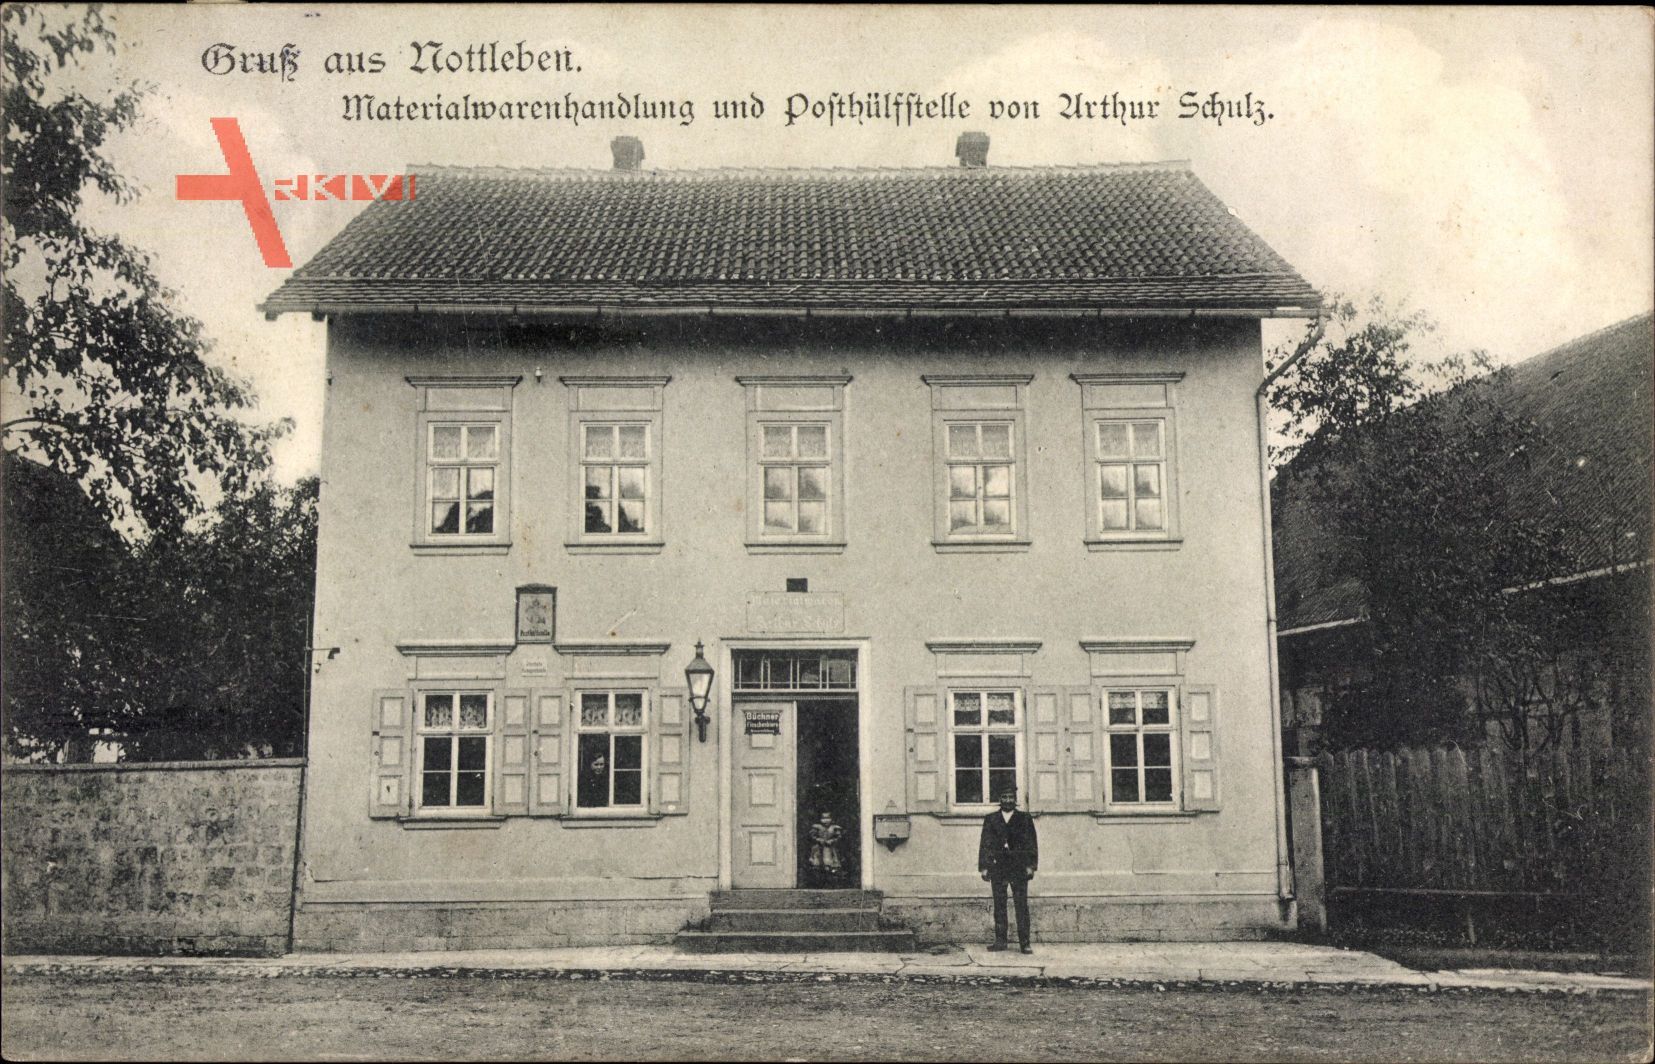 Nottleben Thüringen, Materialwarenhandlung und Poststelle, A. Schulz